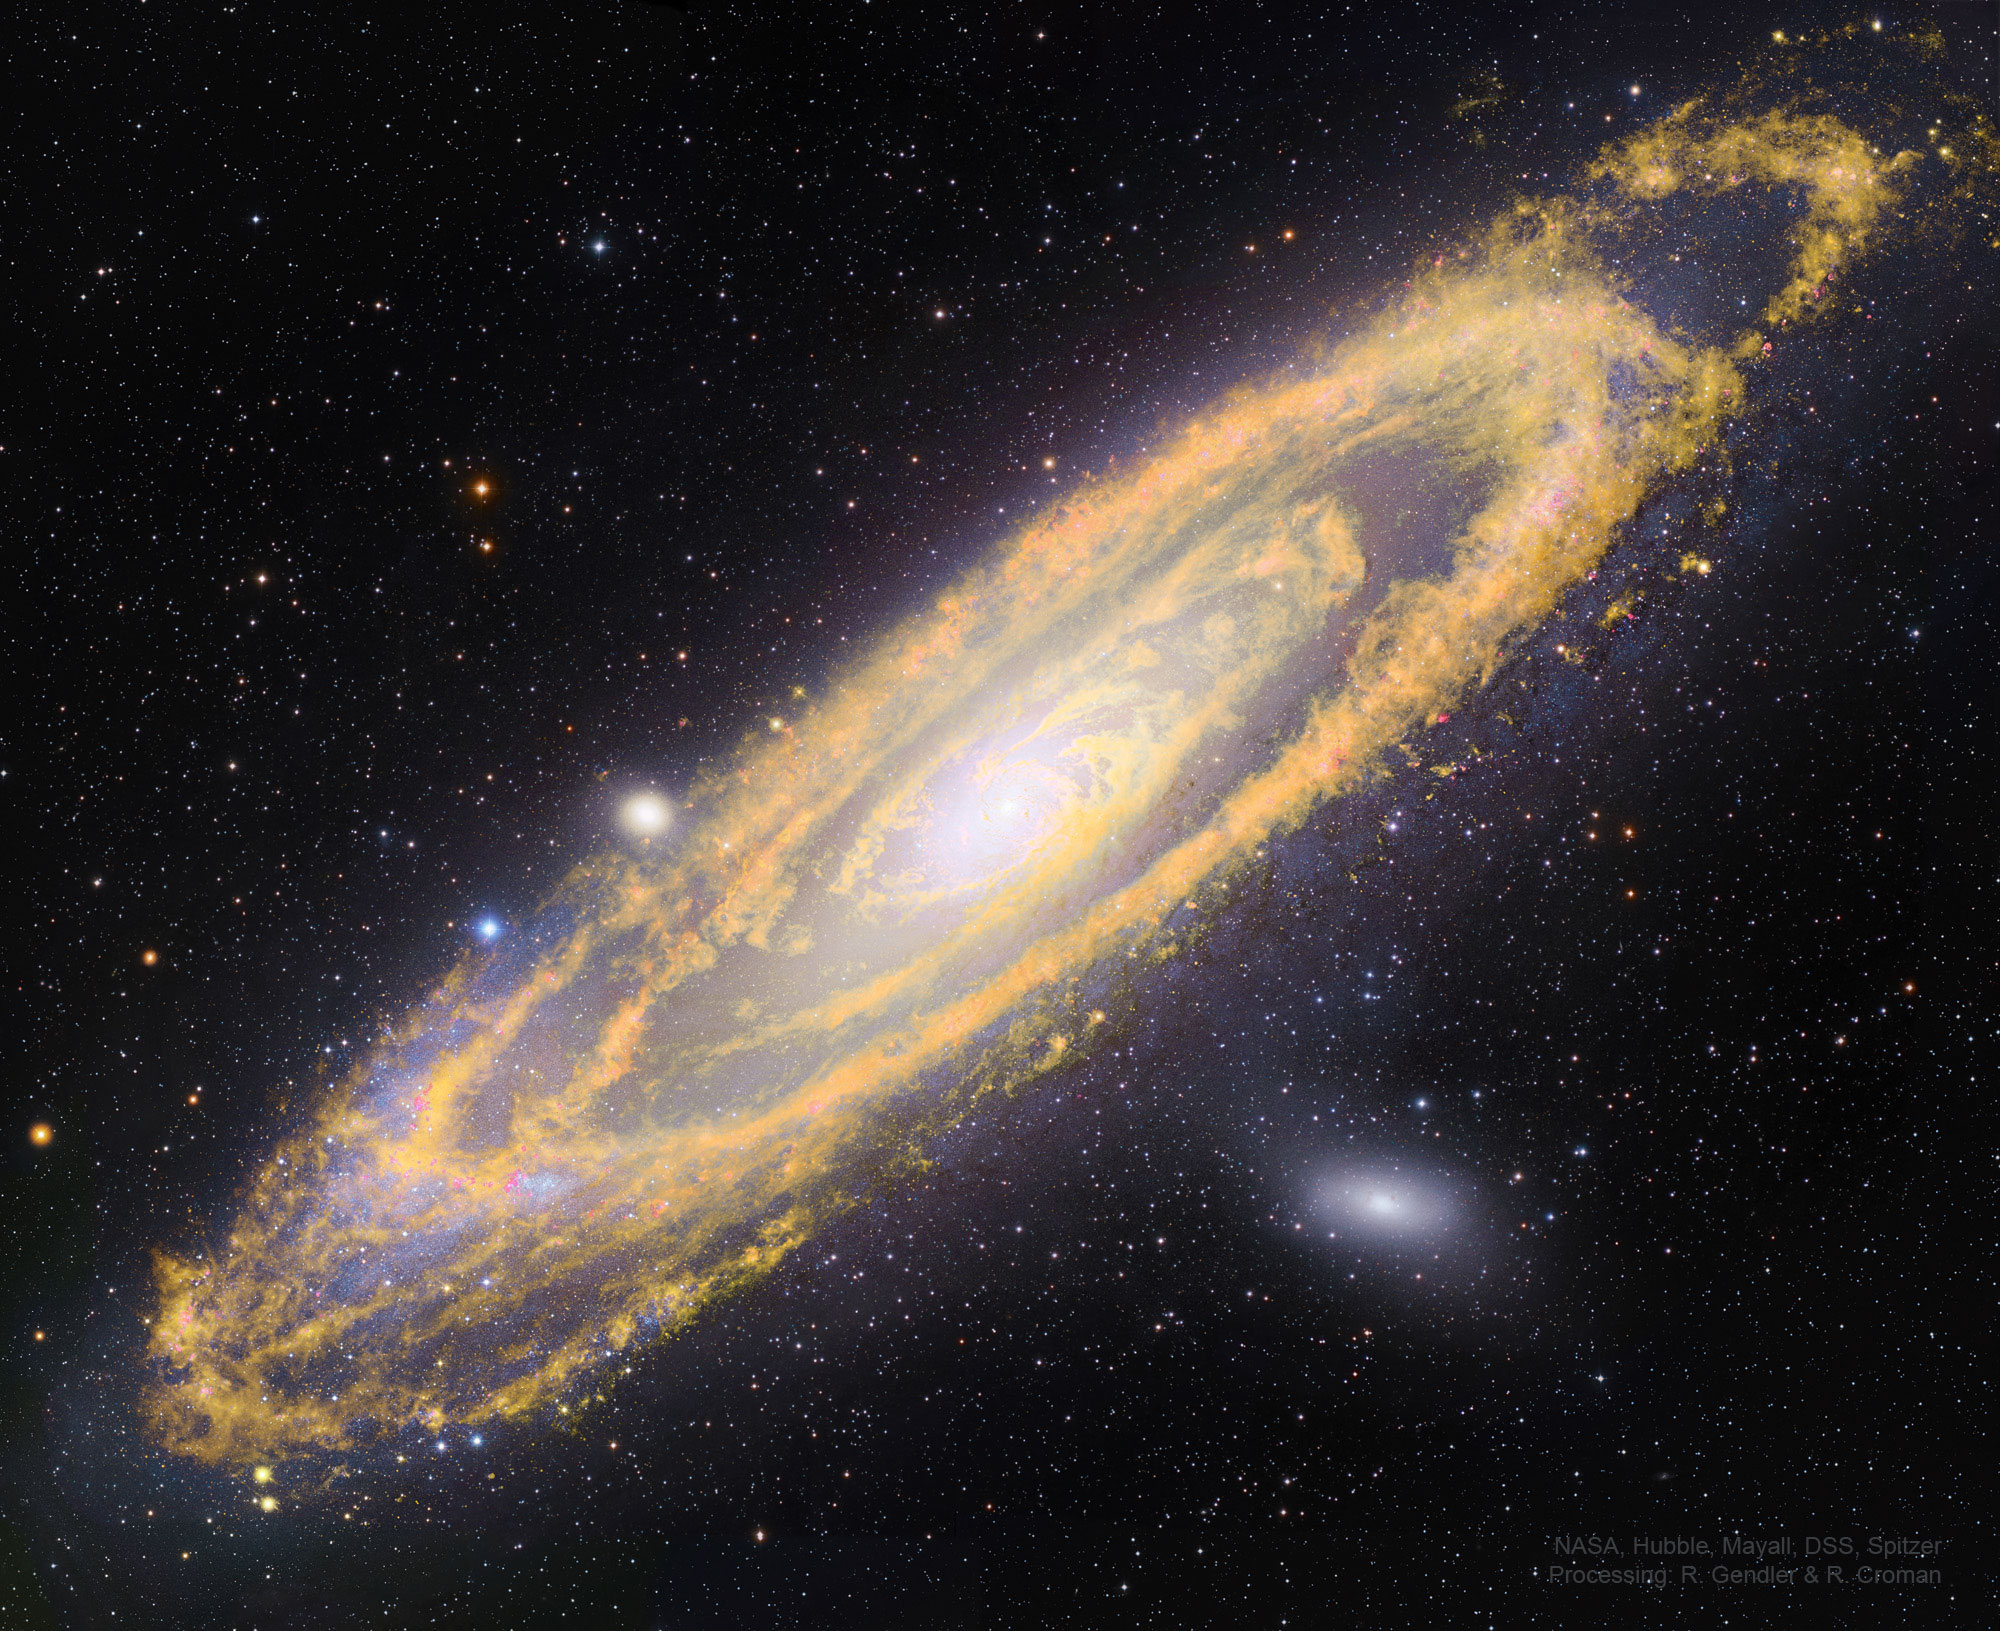 M31_HubbleSpitzerGendler_2000.jpg